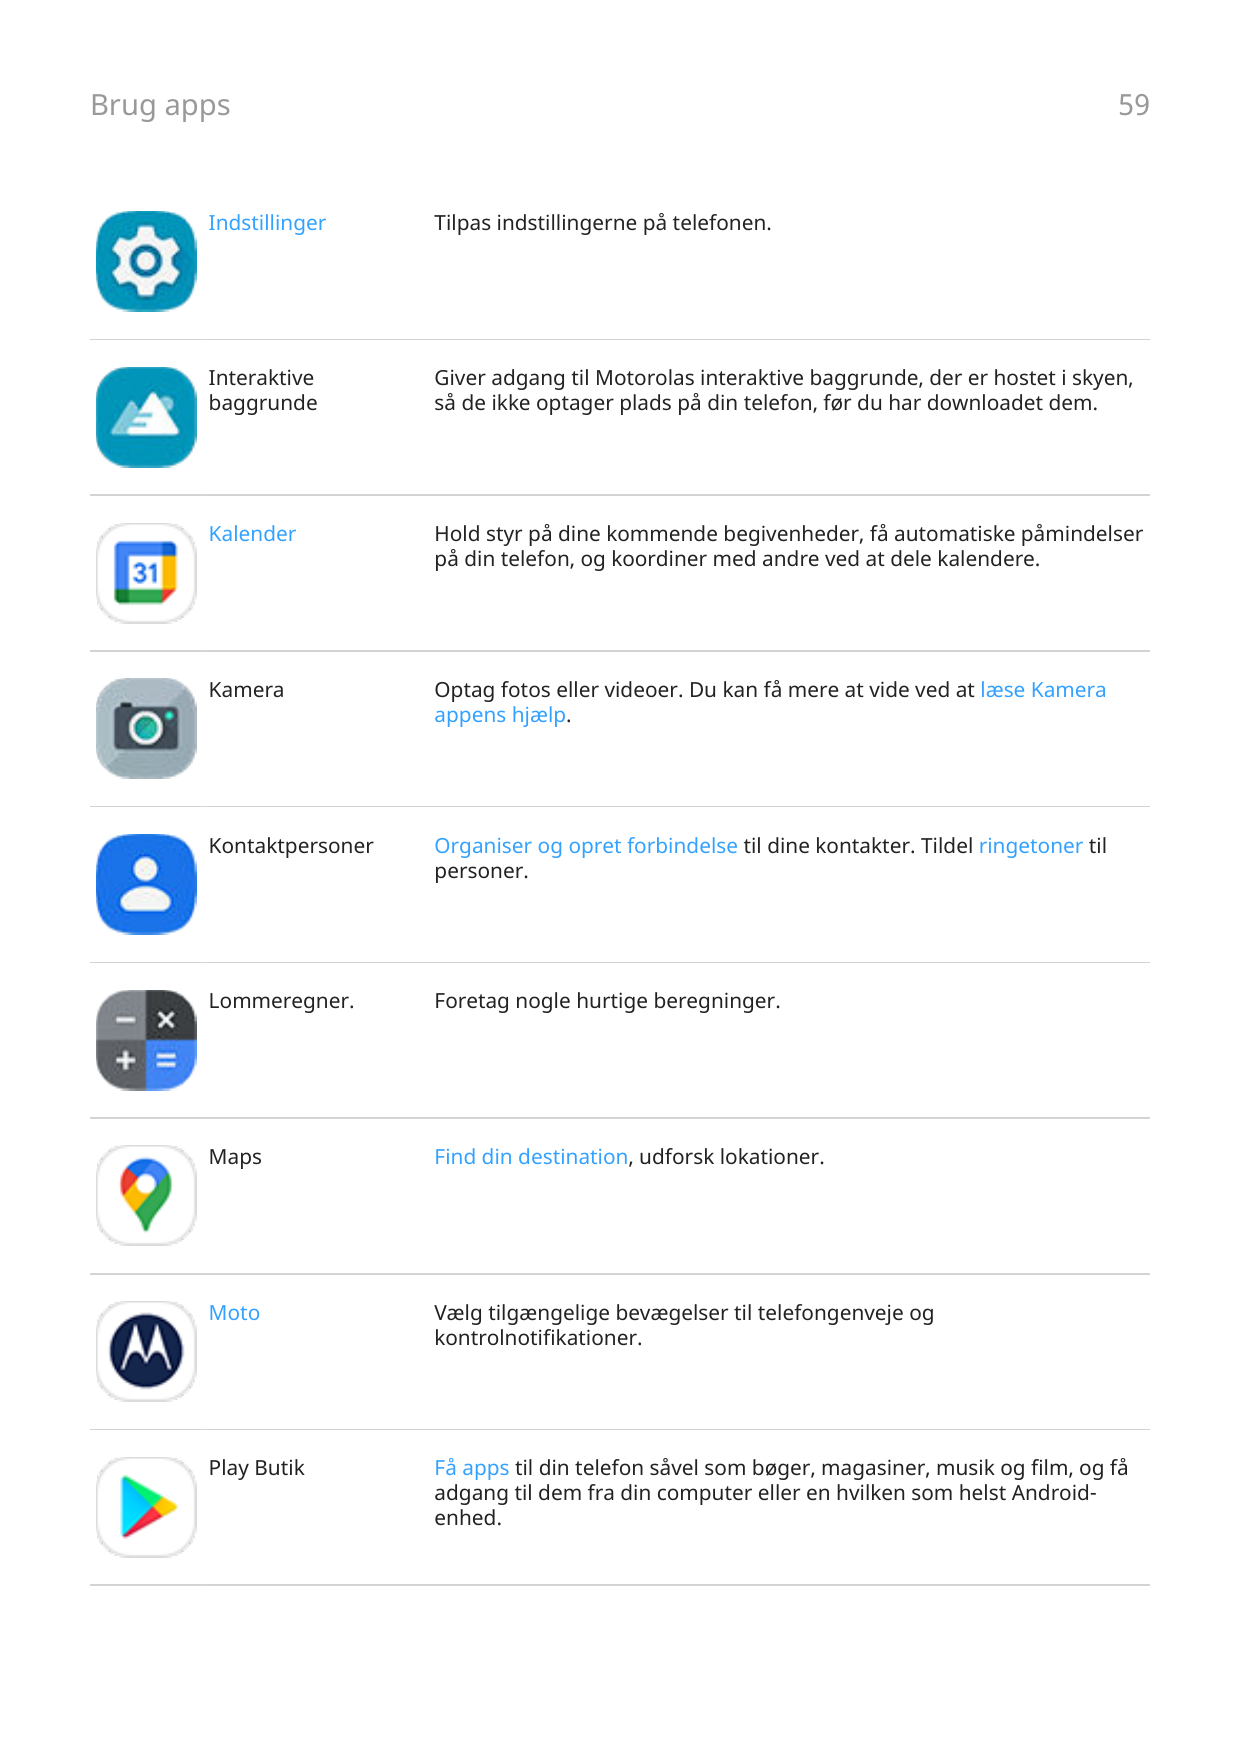 Brug apps59IndstillingerTilpas indstillingerne på telefonen.InteraktivebaggrundeGiver adgang til Motorolas interaktive baggrunde